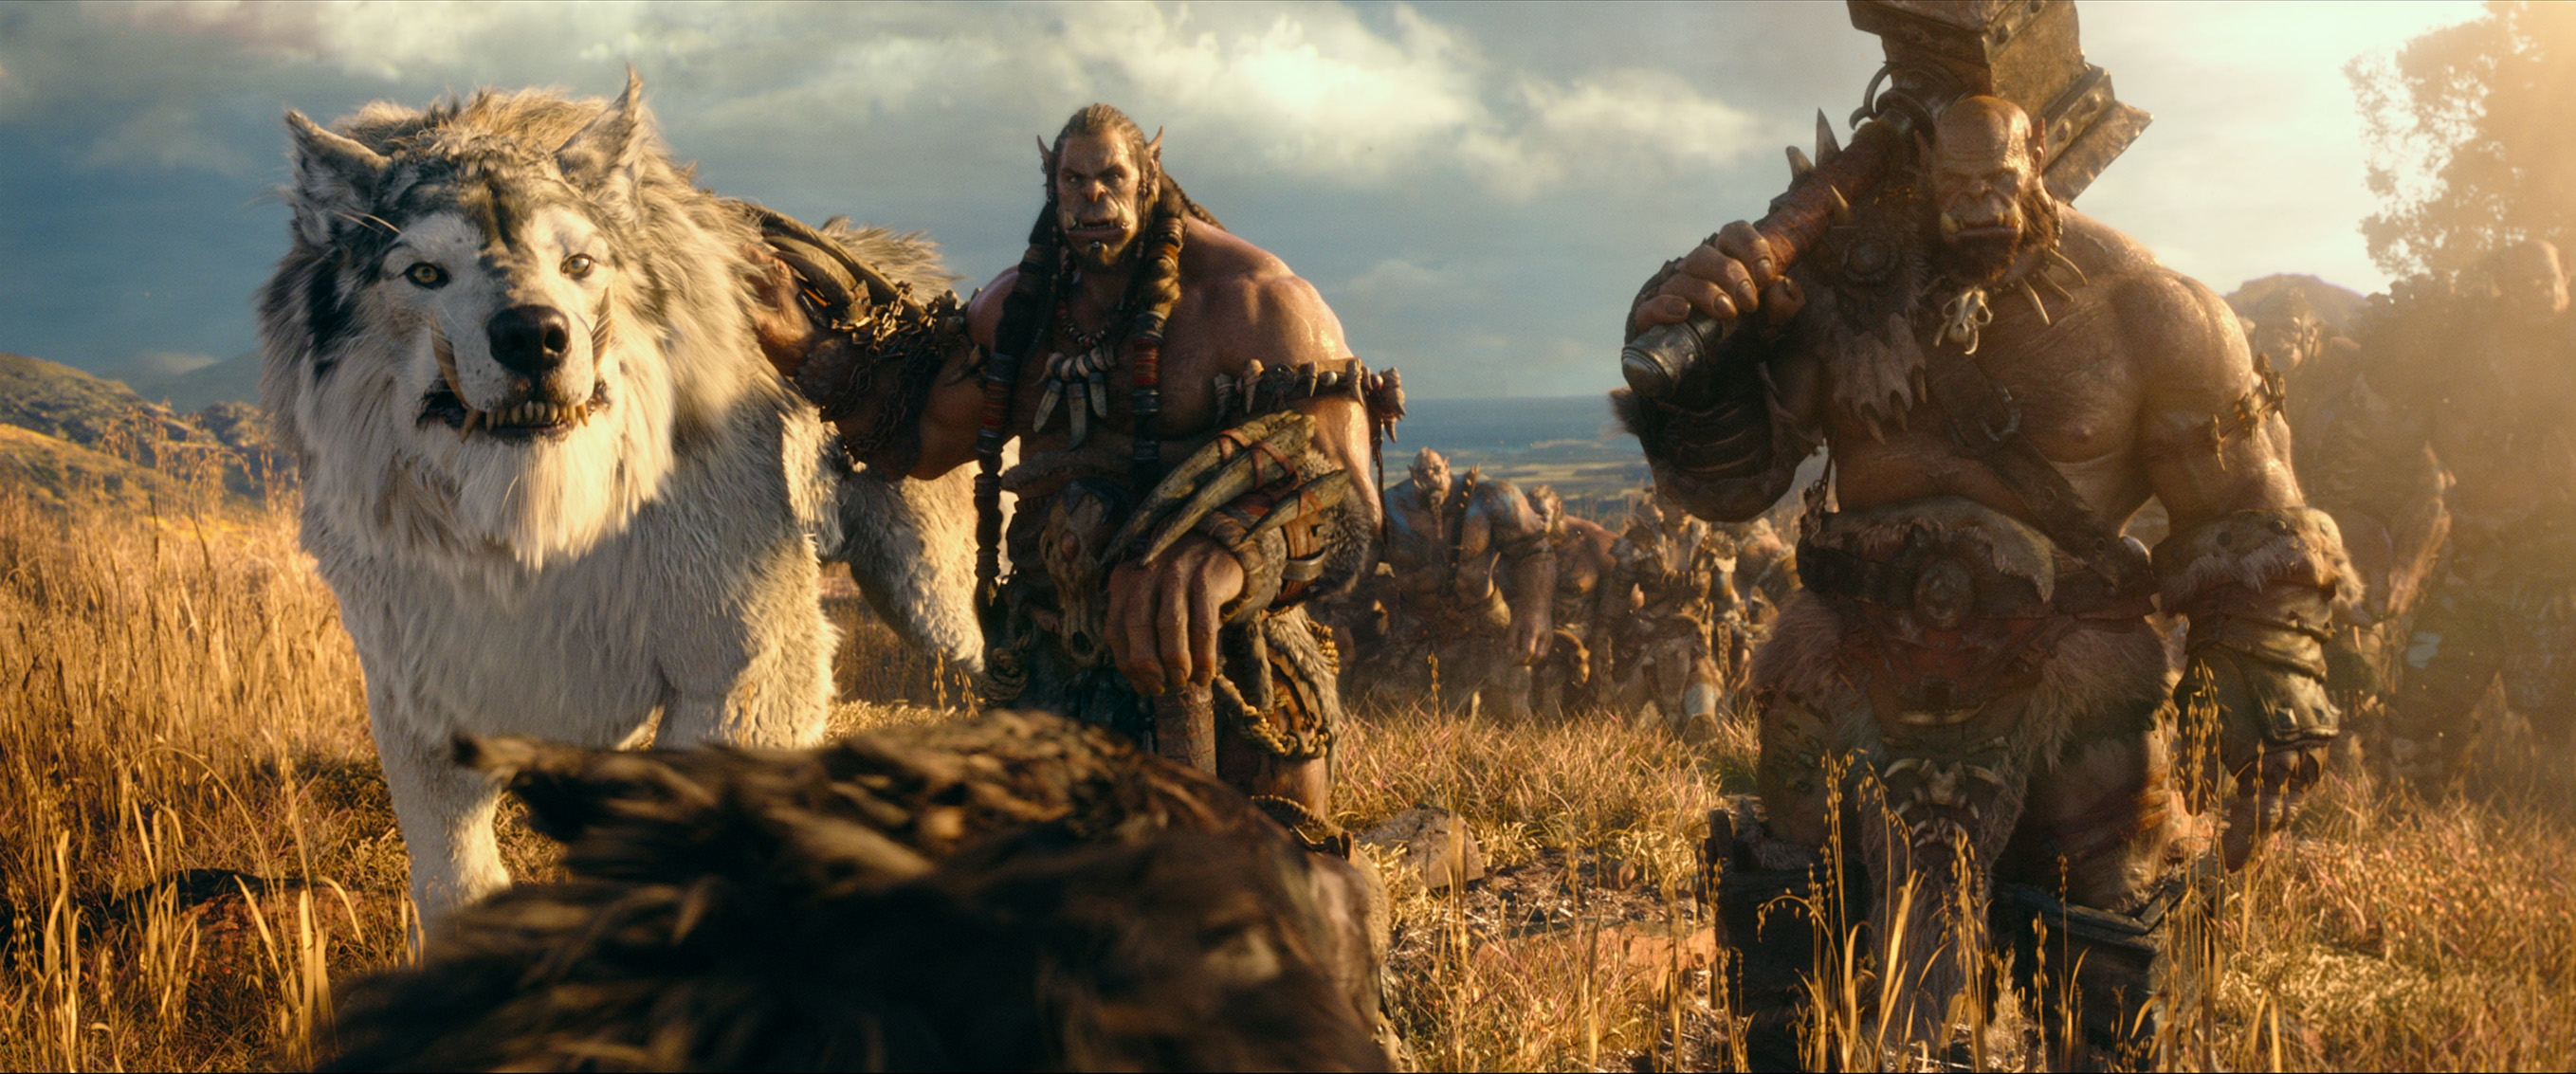 Image du film Warcraft : le commencement b9c15b38-a144-4979-b752-62481283035d